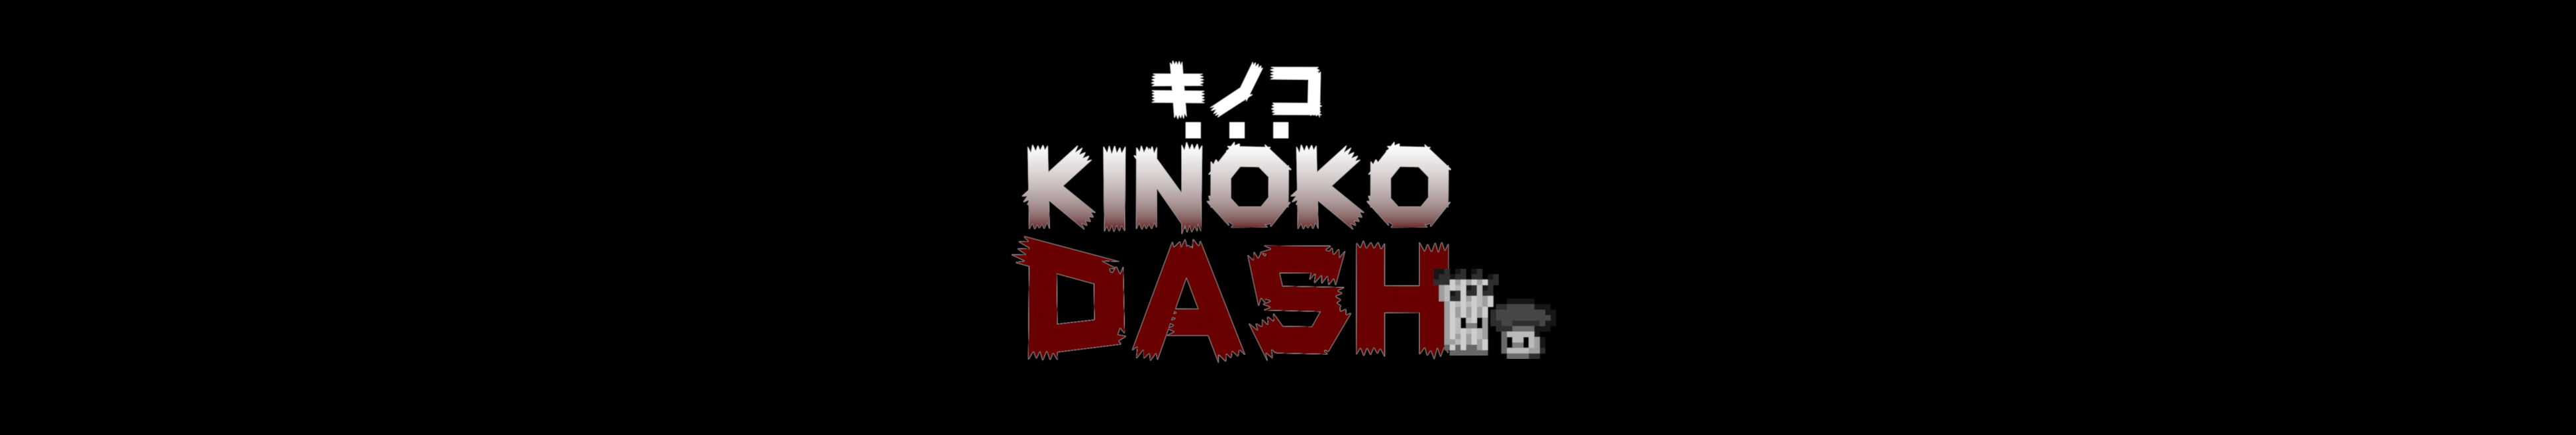 Kinoko Dash